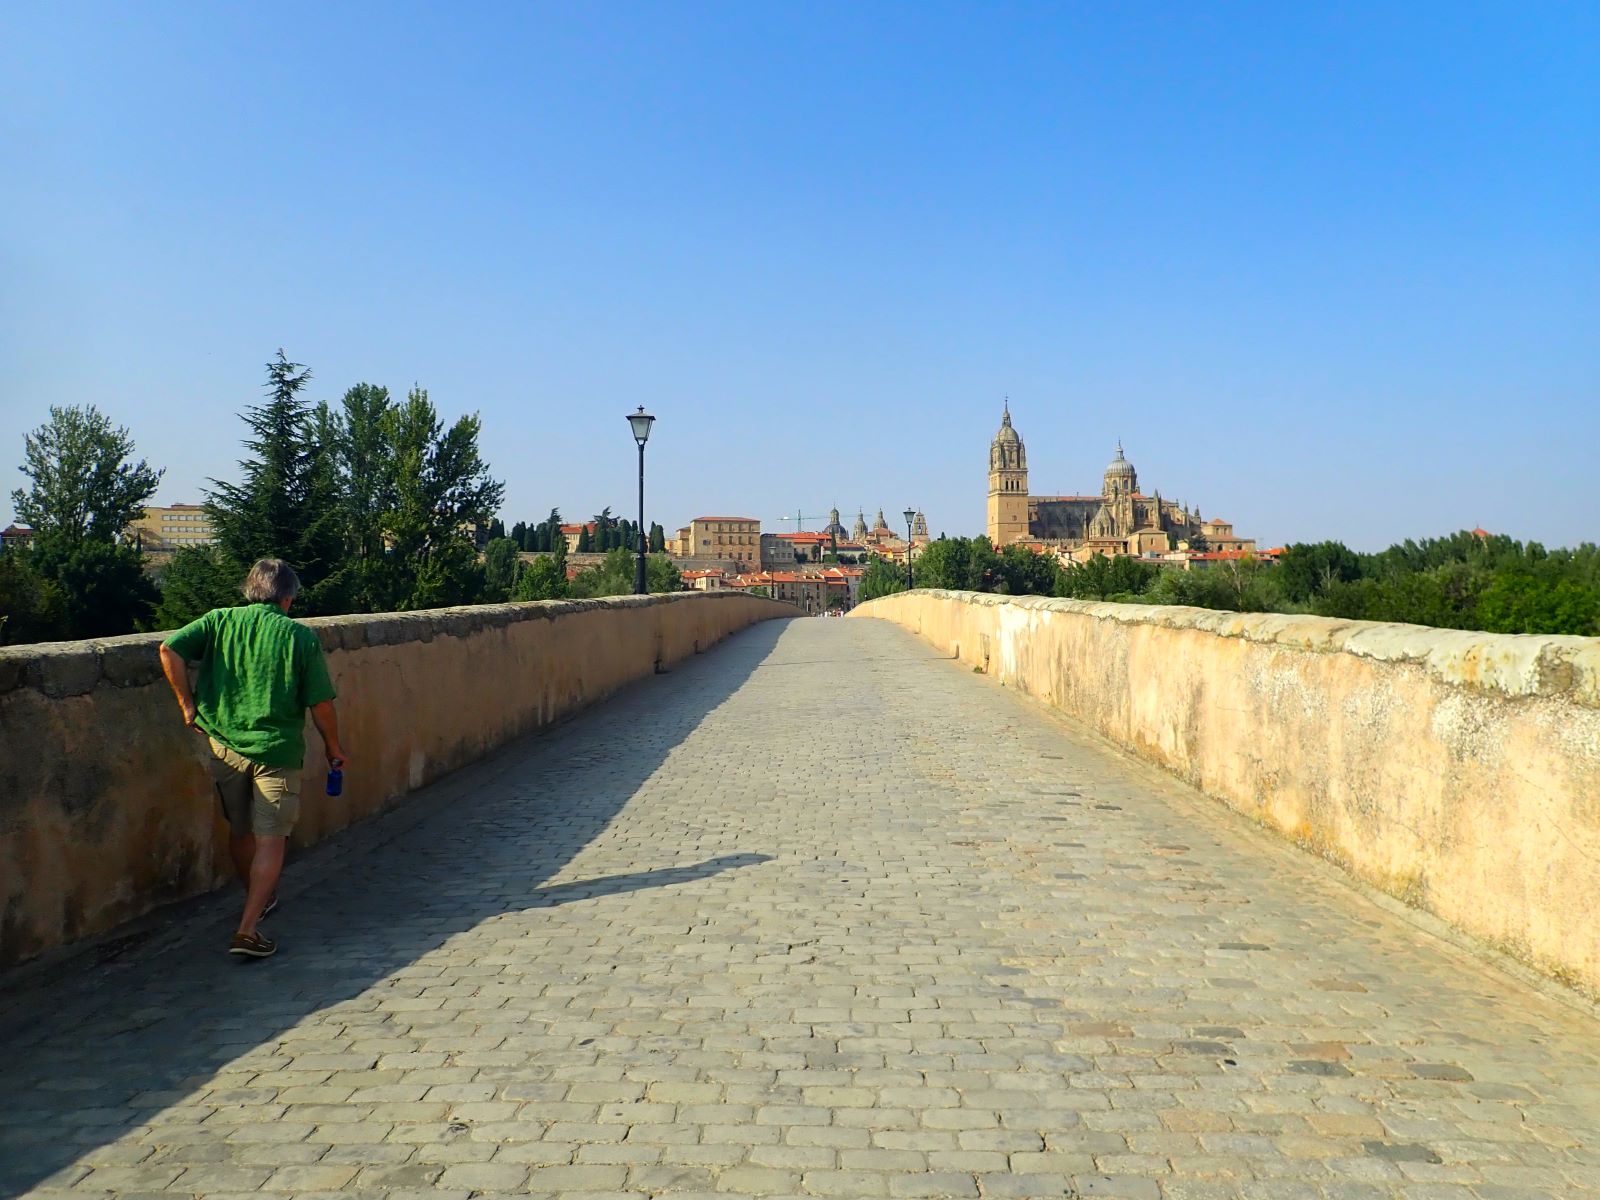 Crossing Salamanca's Roman Bridge